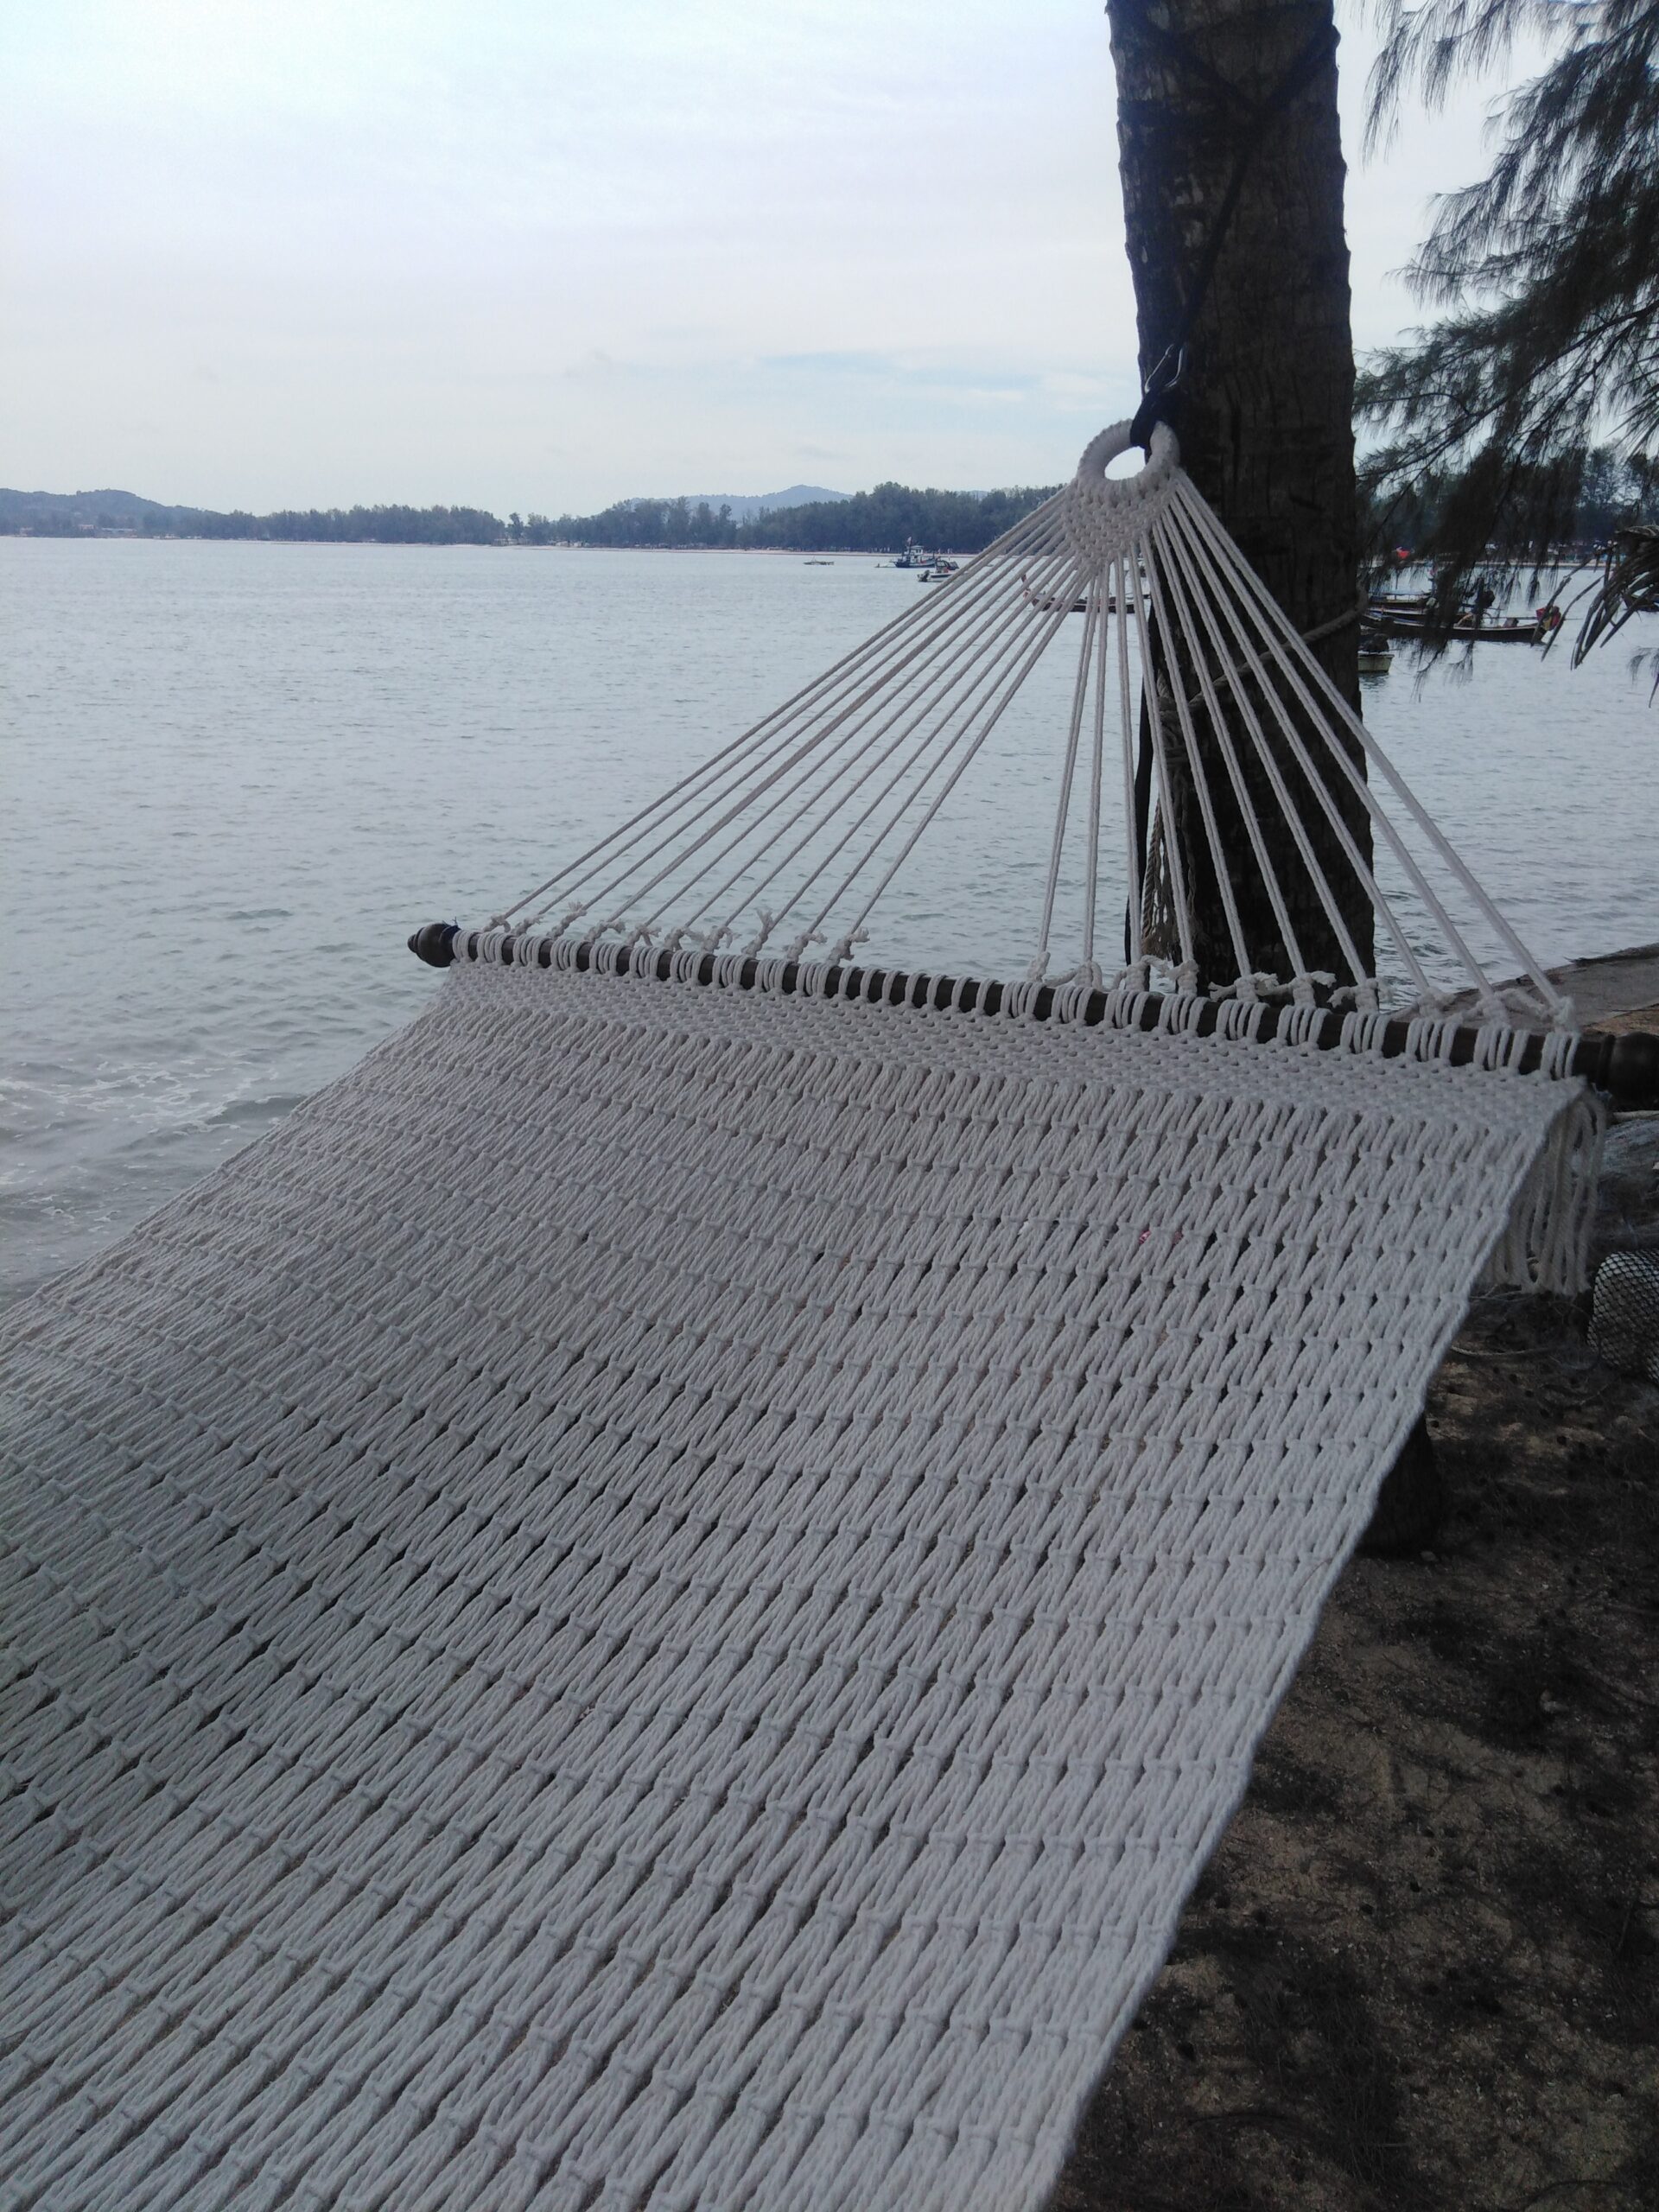 ula heaven hammock